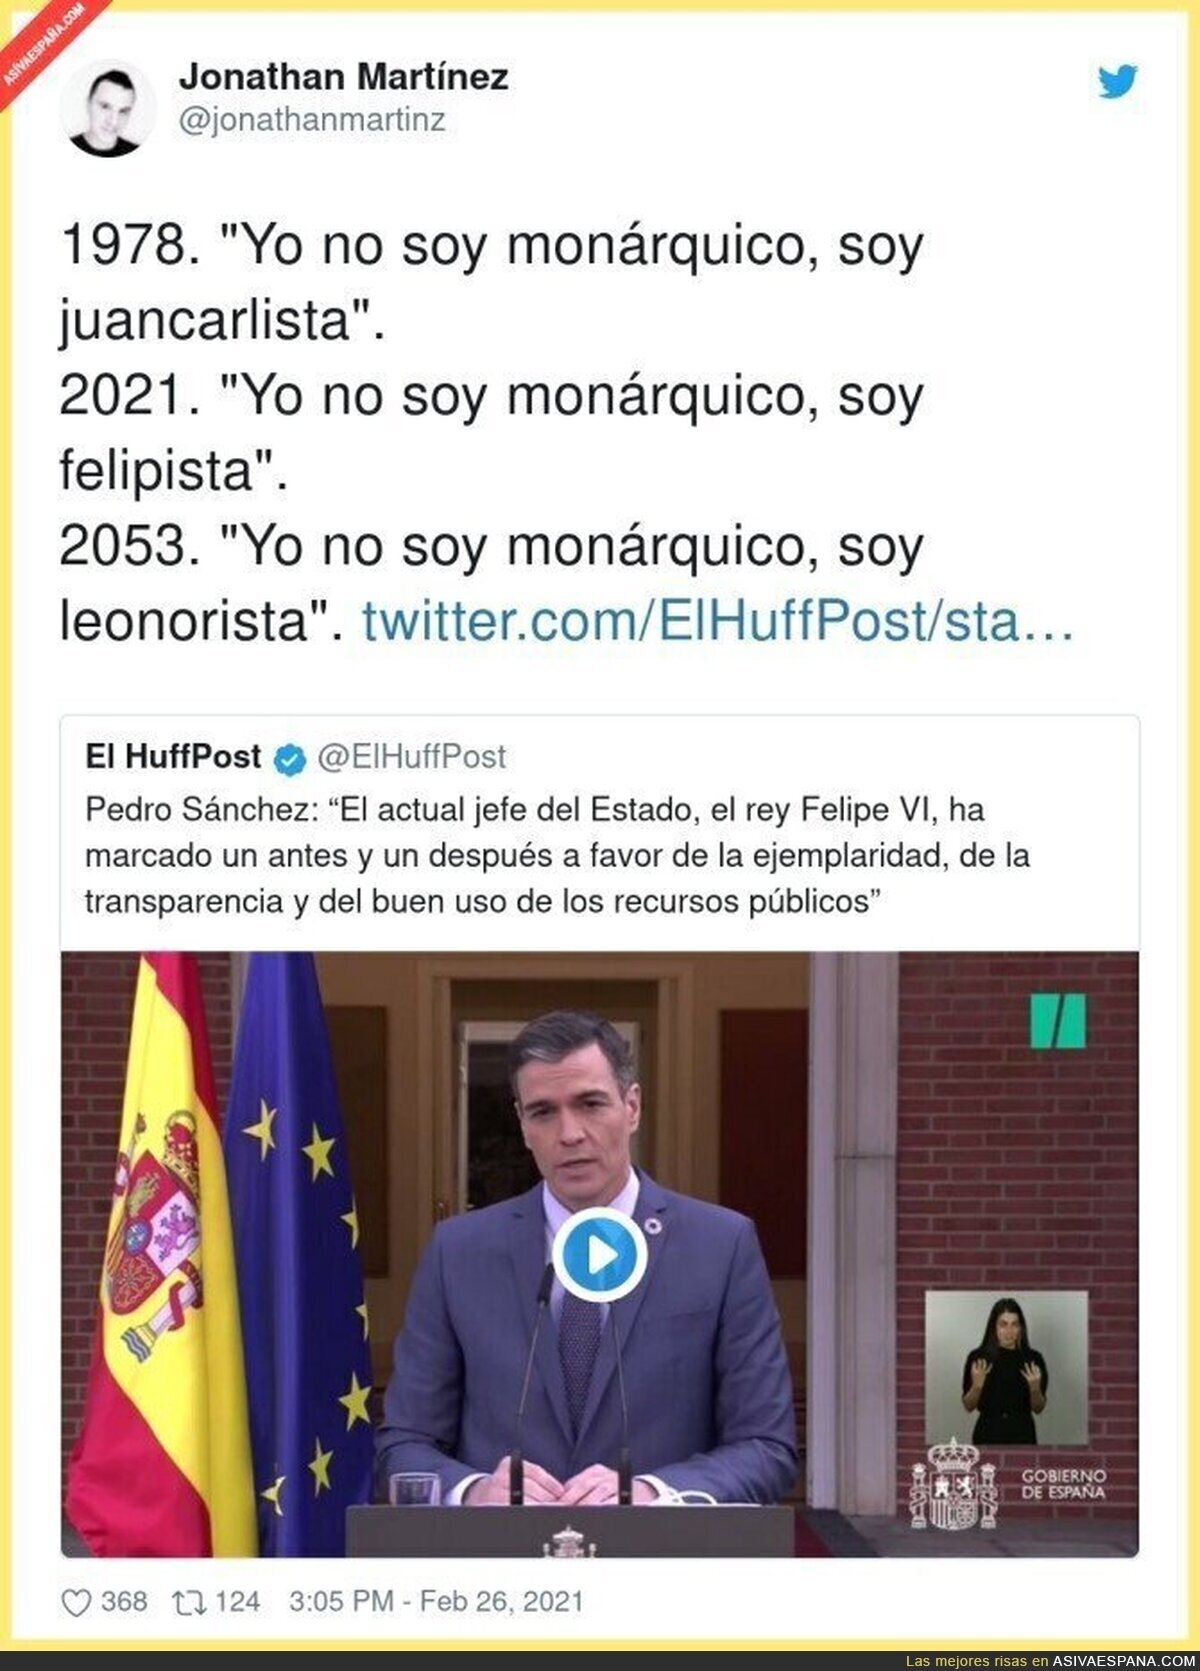 La Monarquía no tiene sentido en España desde hace mucho